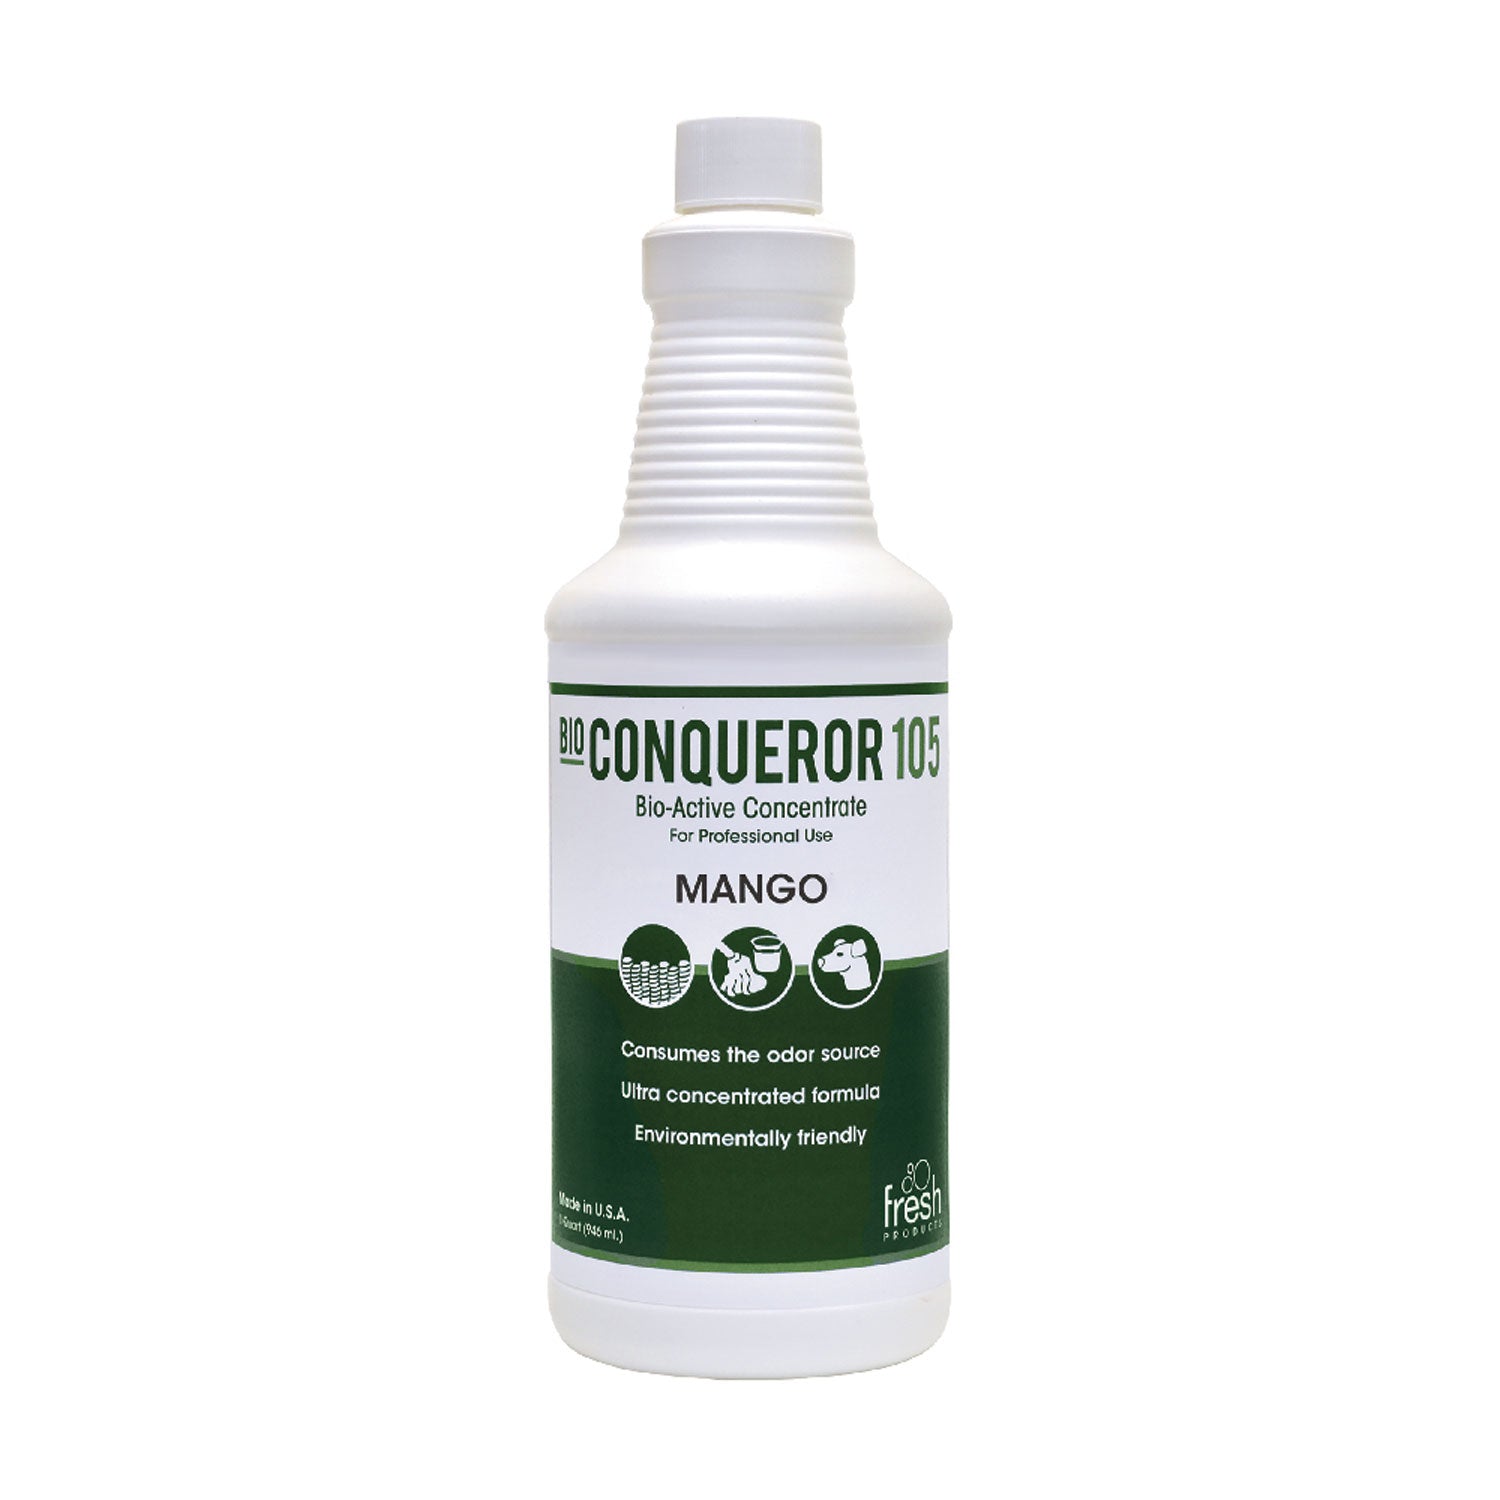 Bio Conqueror 105 Enzymatic Odor Counteractant Concentrate, Mango, 32 oz Bottle, 12/Carton - 1